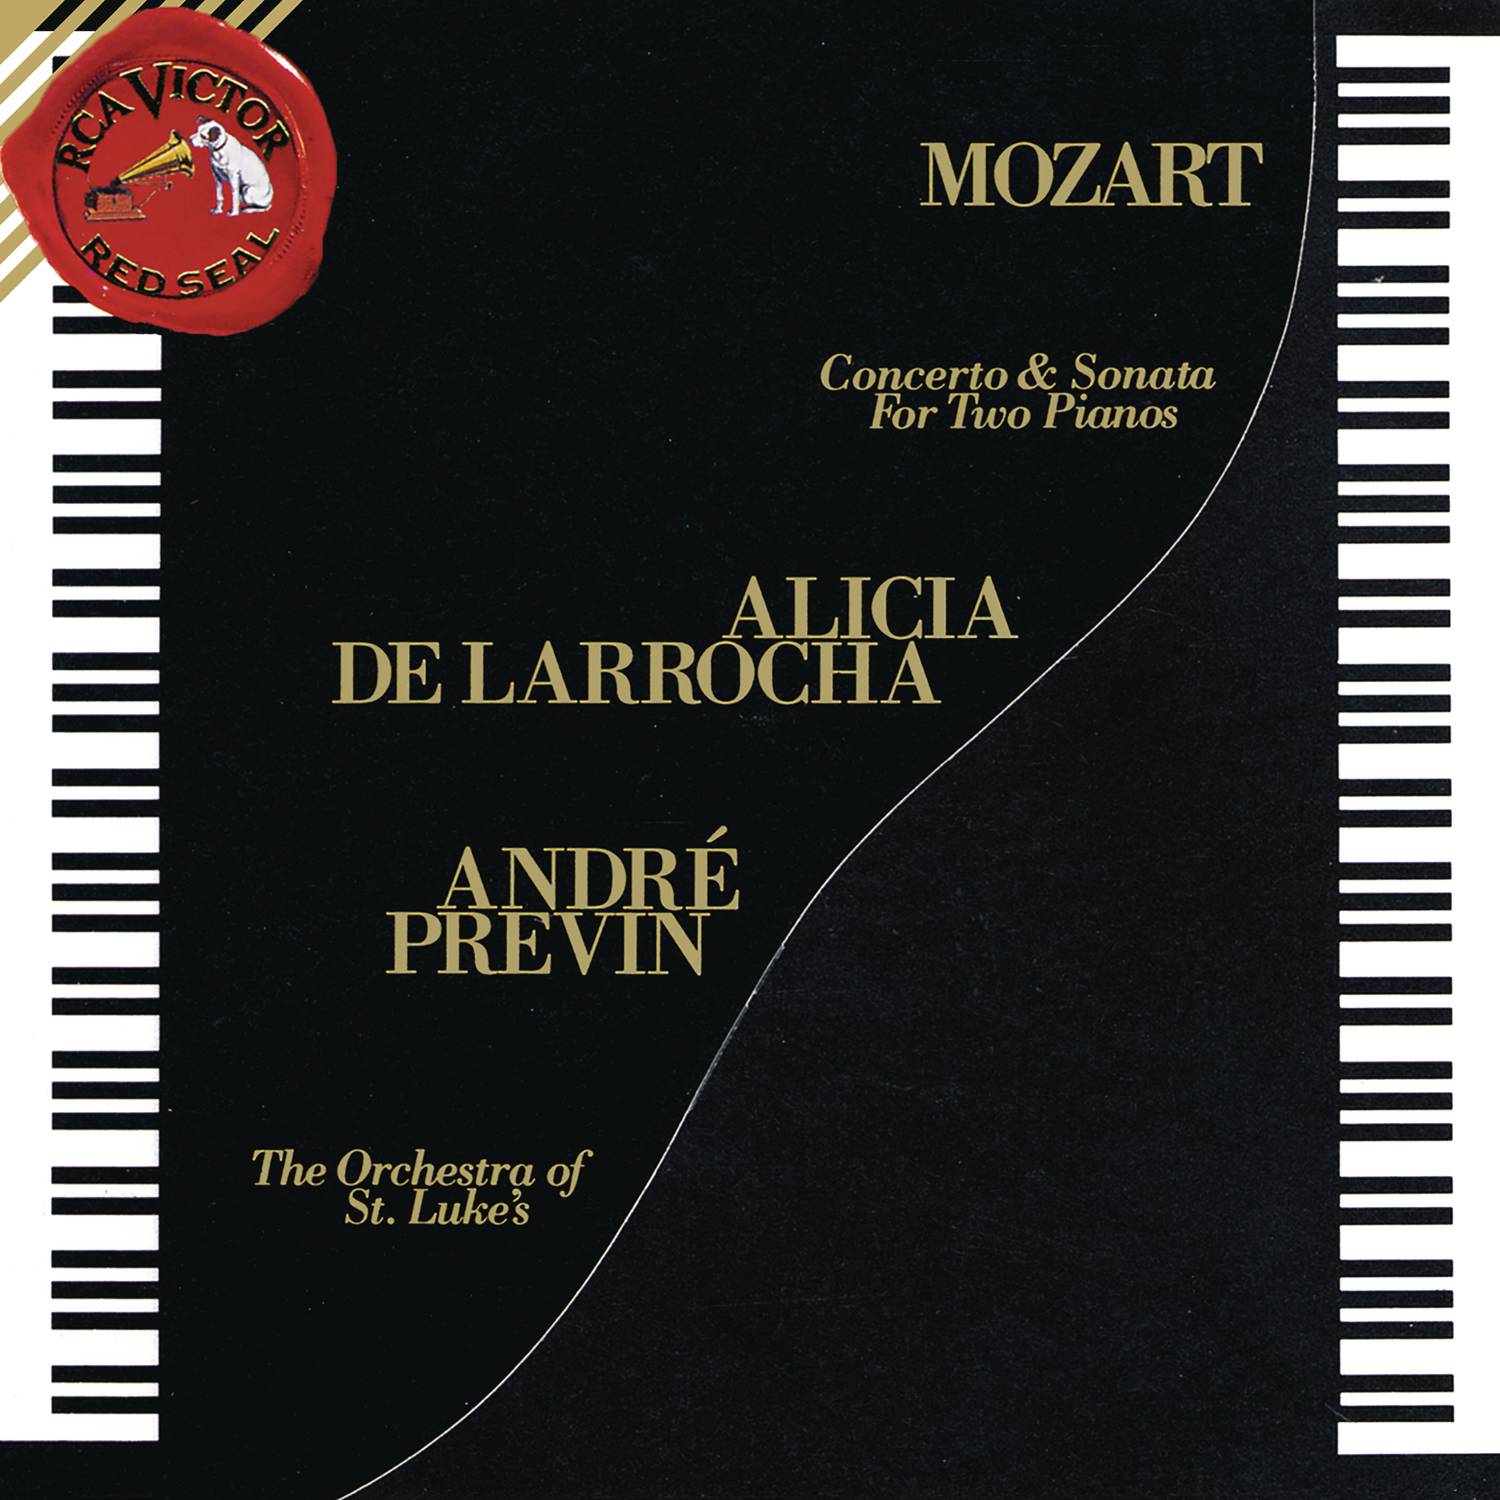 Sonata for 2 Pianos in D Major, K. 448:I. Allegro con spirito